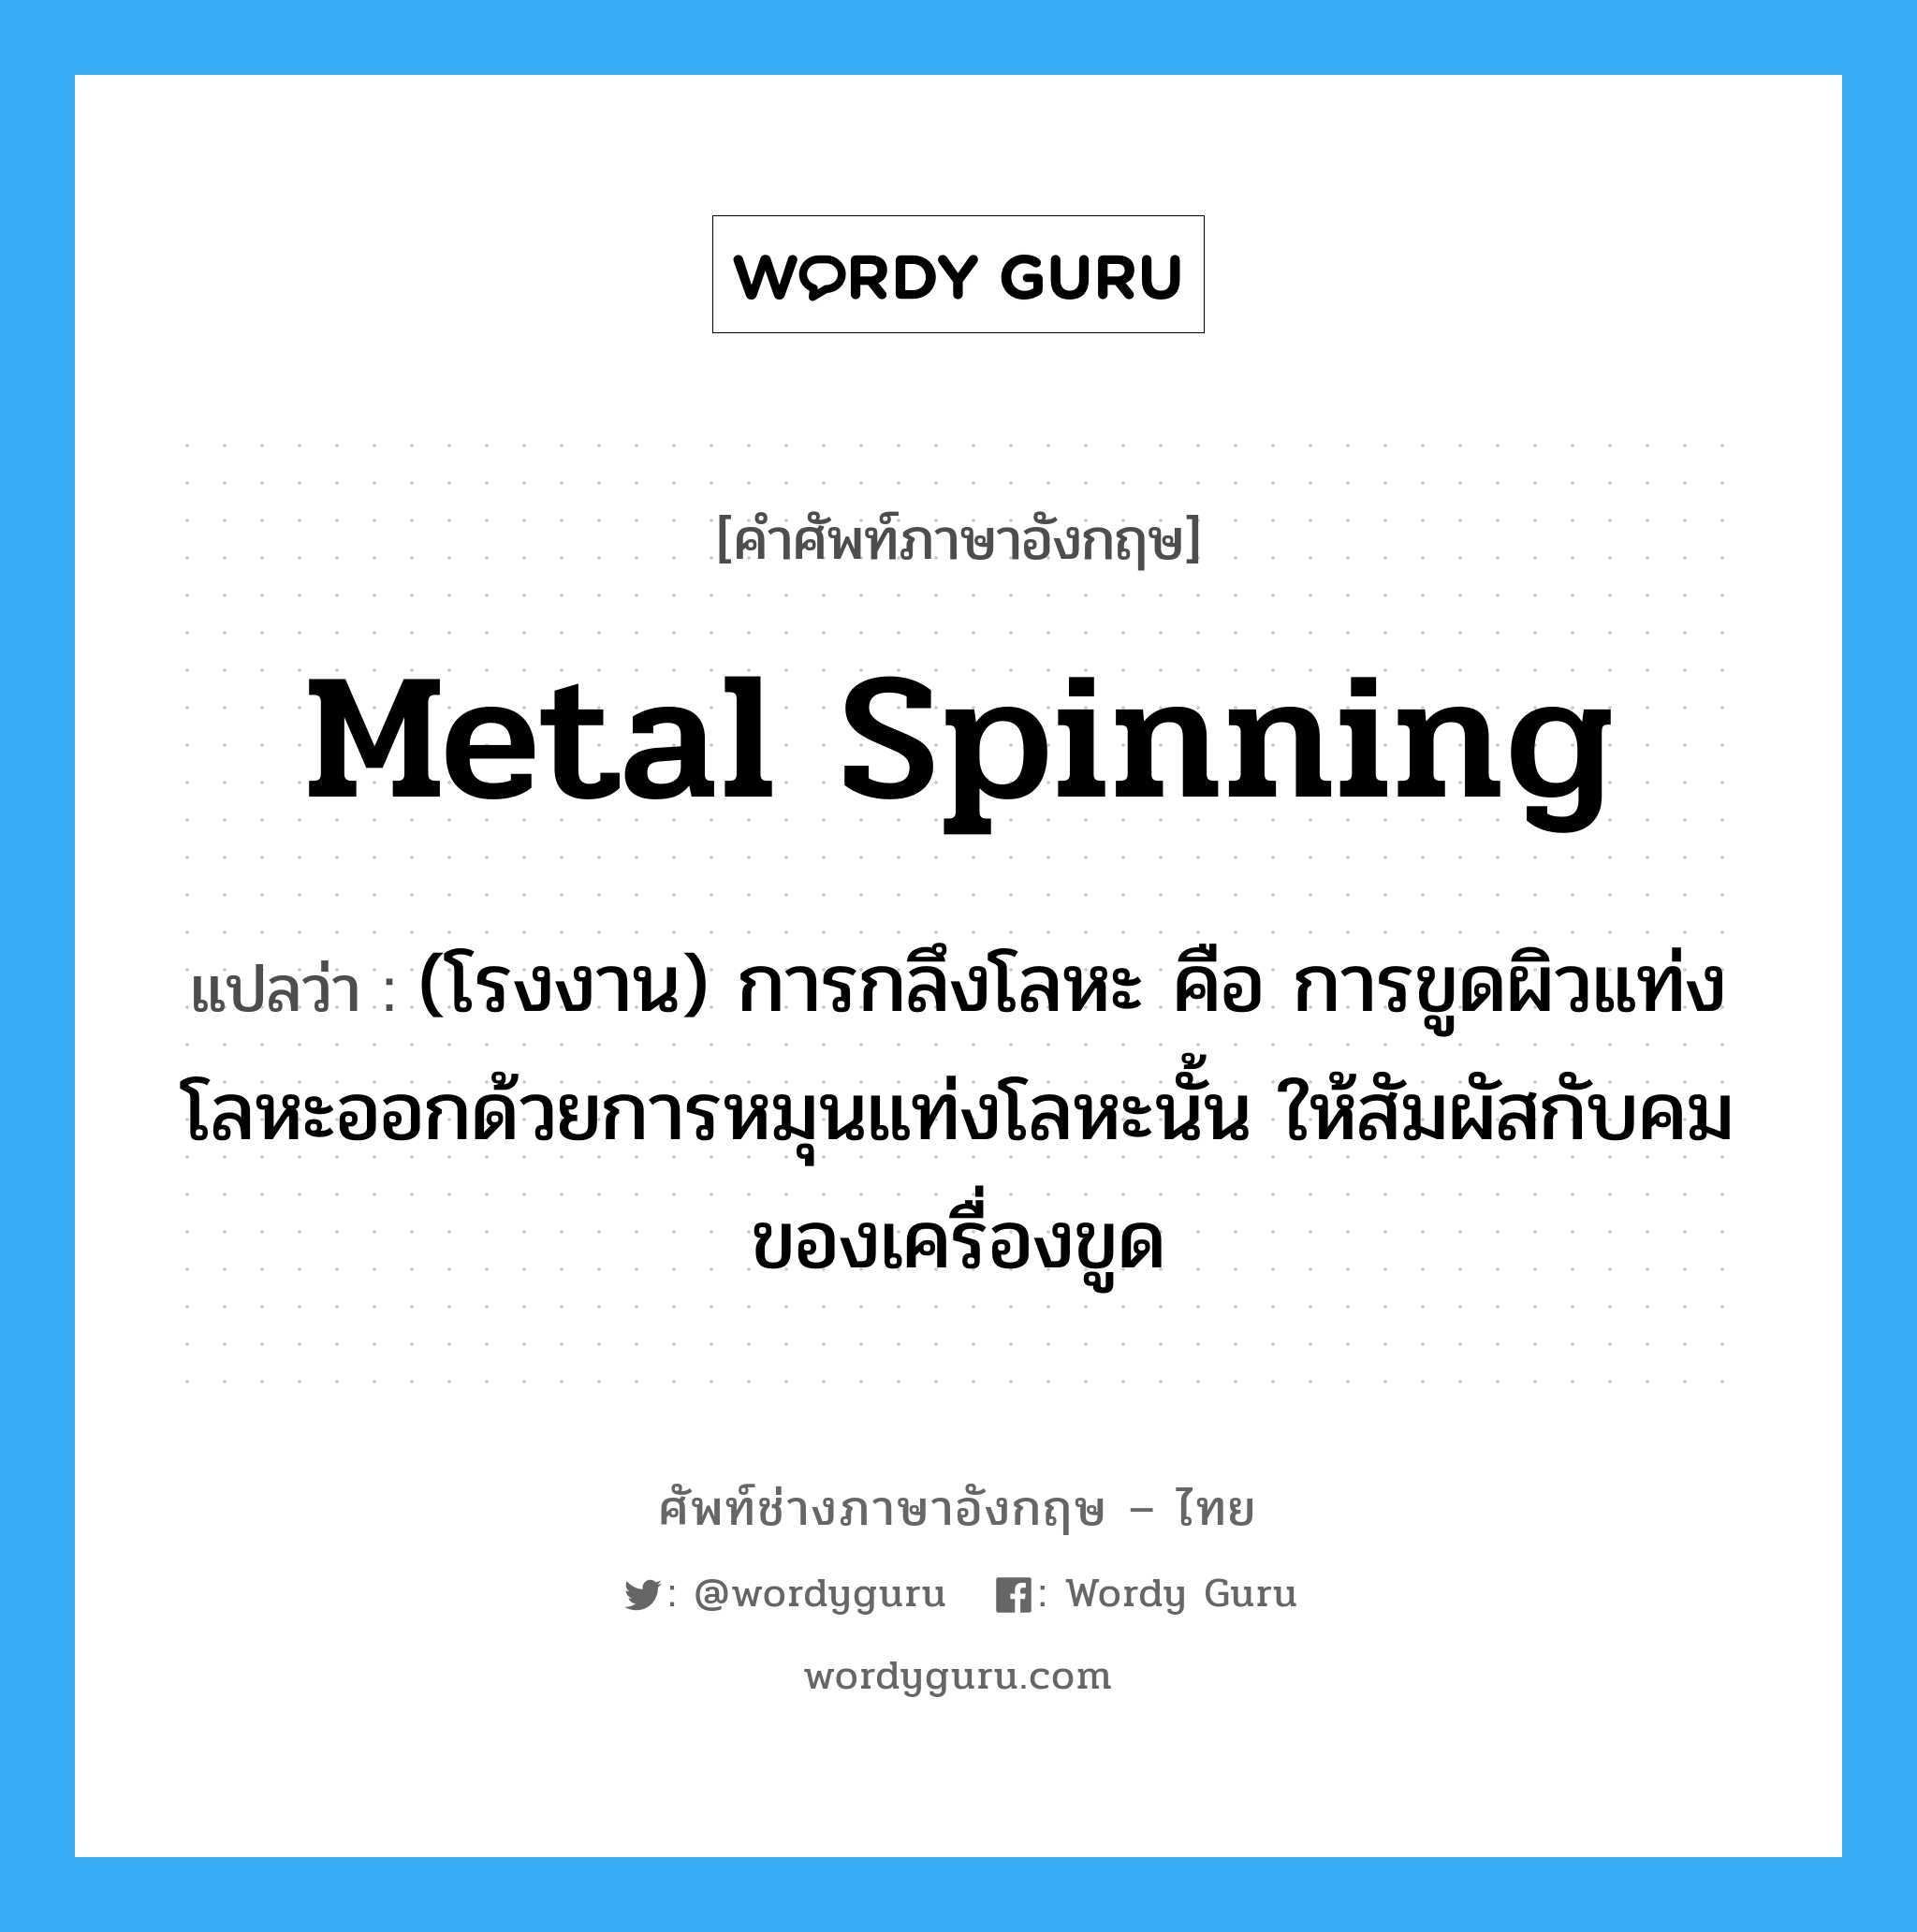 metal spinning แปลว่า?, คำศัพท์ช่างภาษาอังกฤษ - ไทย metal spinning คำศัพท์ภาษาอังกฤษ metal spinning แปลว่า (โรงงาน) การกลึงโลหะ คือ การขูดผิวแท่งโลหะออกด้วยการหมุนแท่งโลหะนั้น ให้สัมผัสกับคมของเครื่องขูด